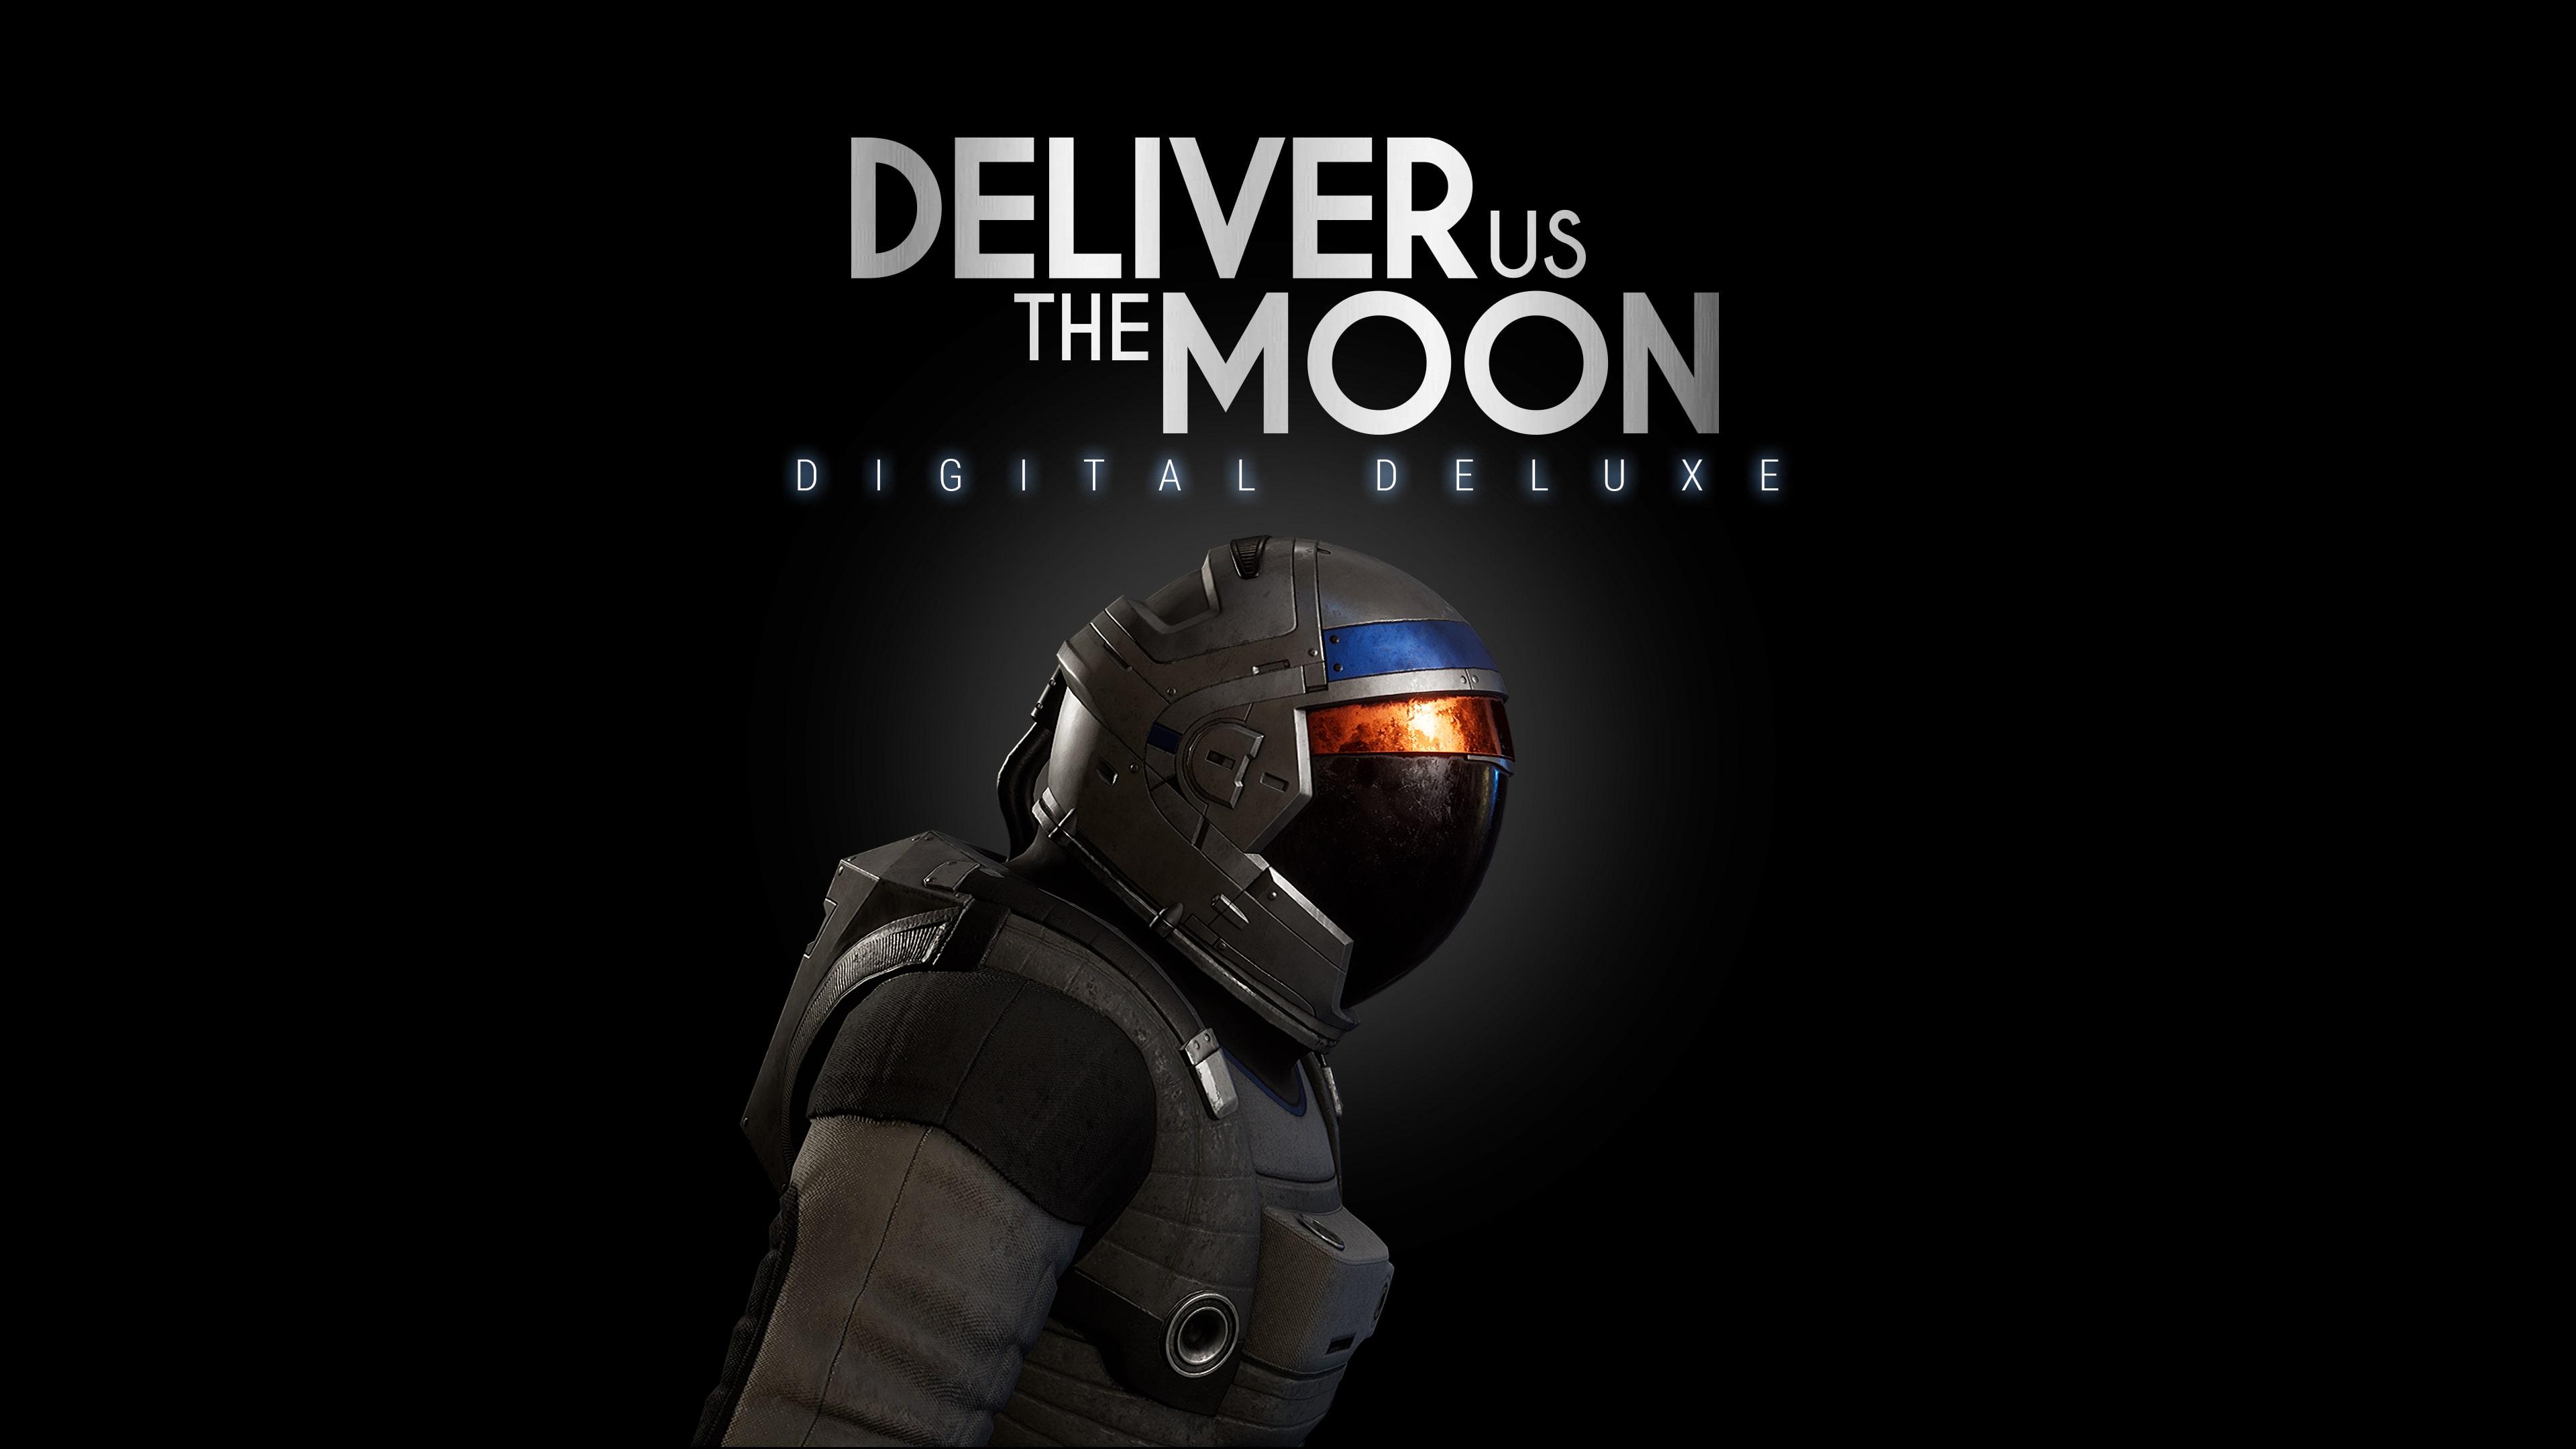 Digital Deluxe